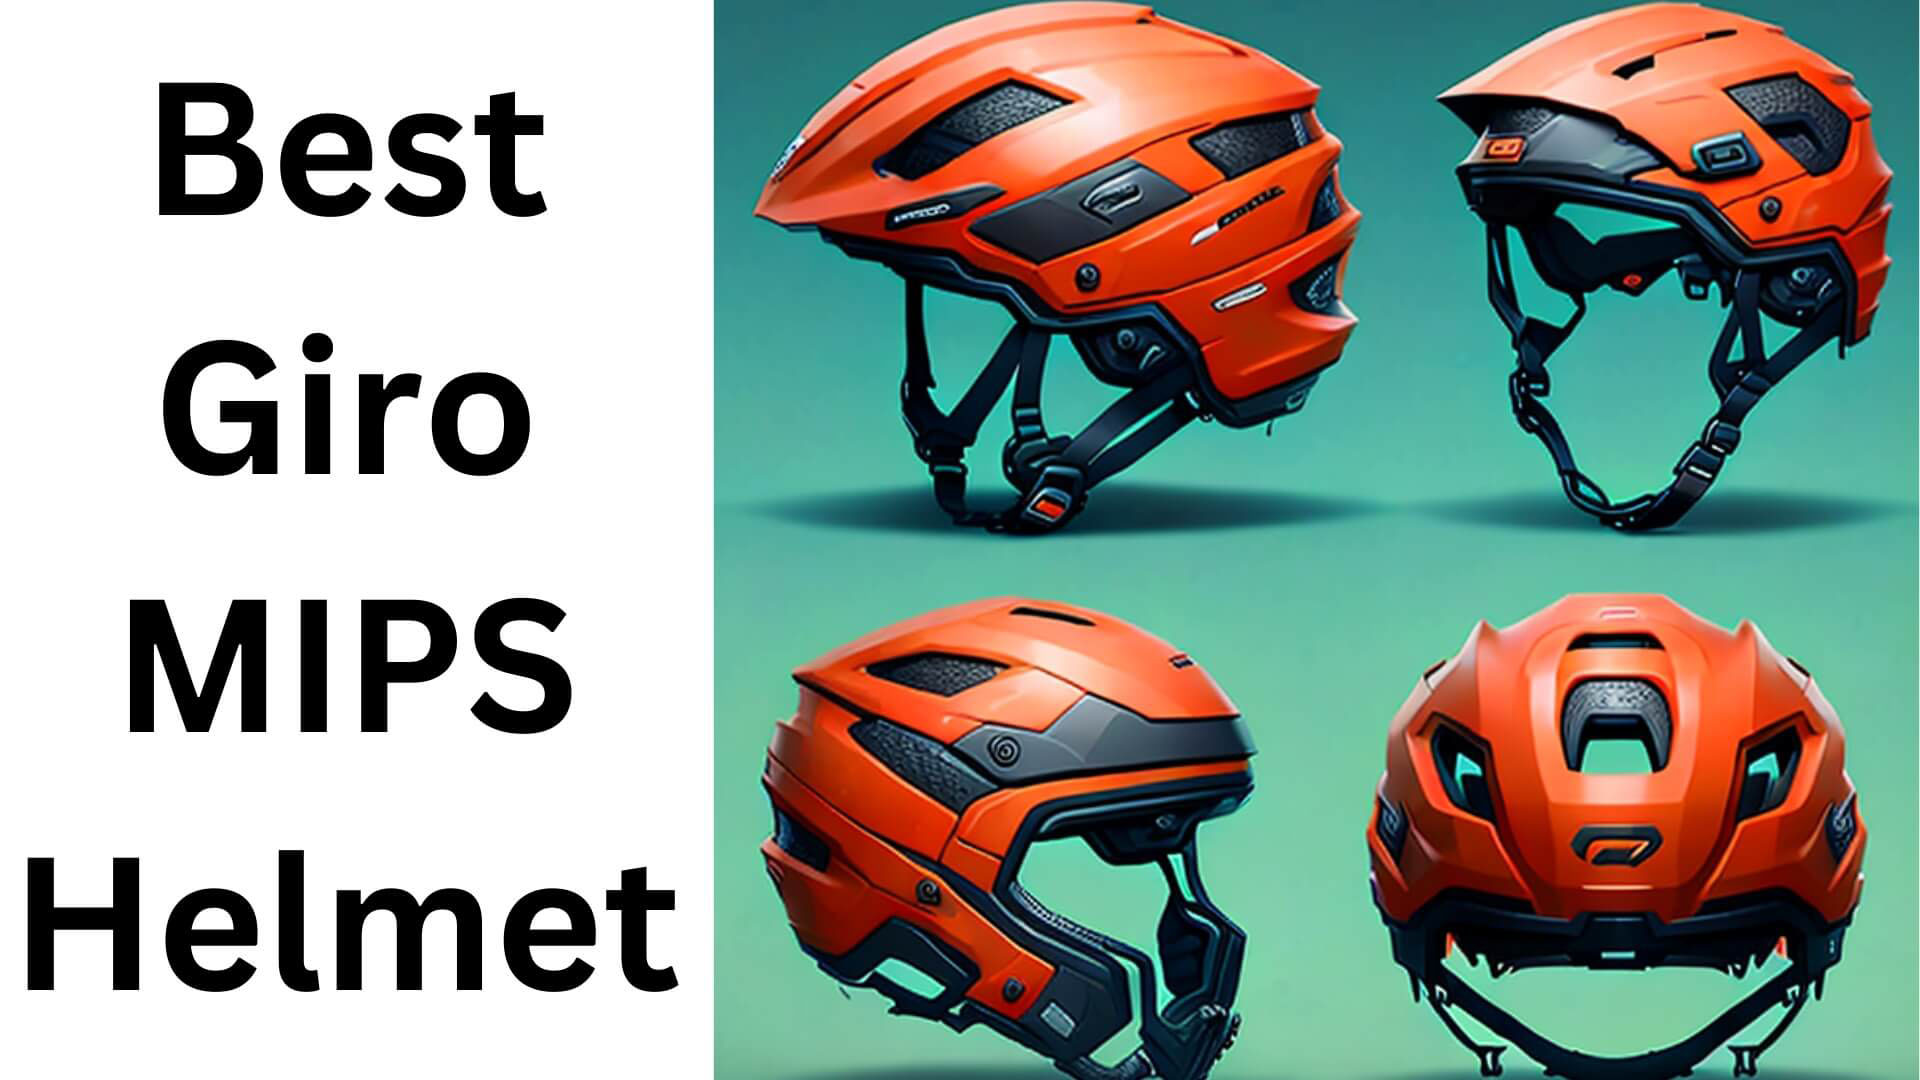 Best Giro MIPS Helmet